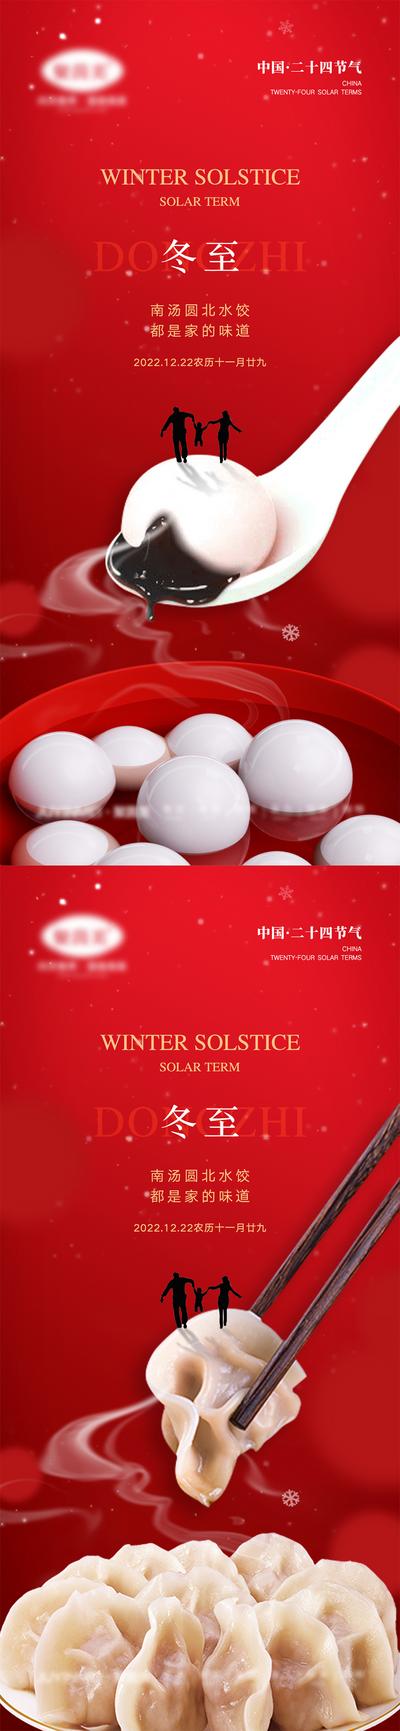 南门网 海报 人物 二十四节气 冬至 汤圆 水饺 房地产 雪花 下雪 团圆 筷子